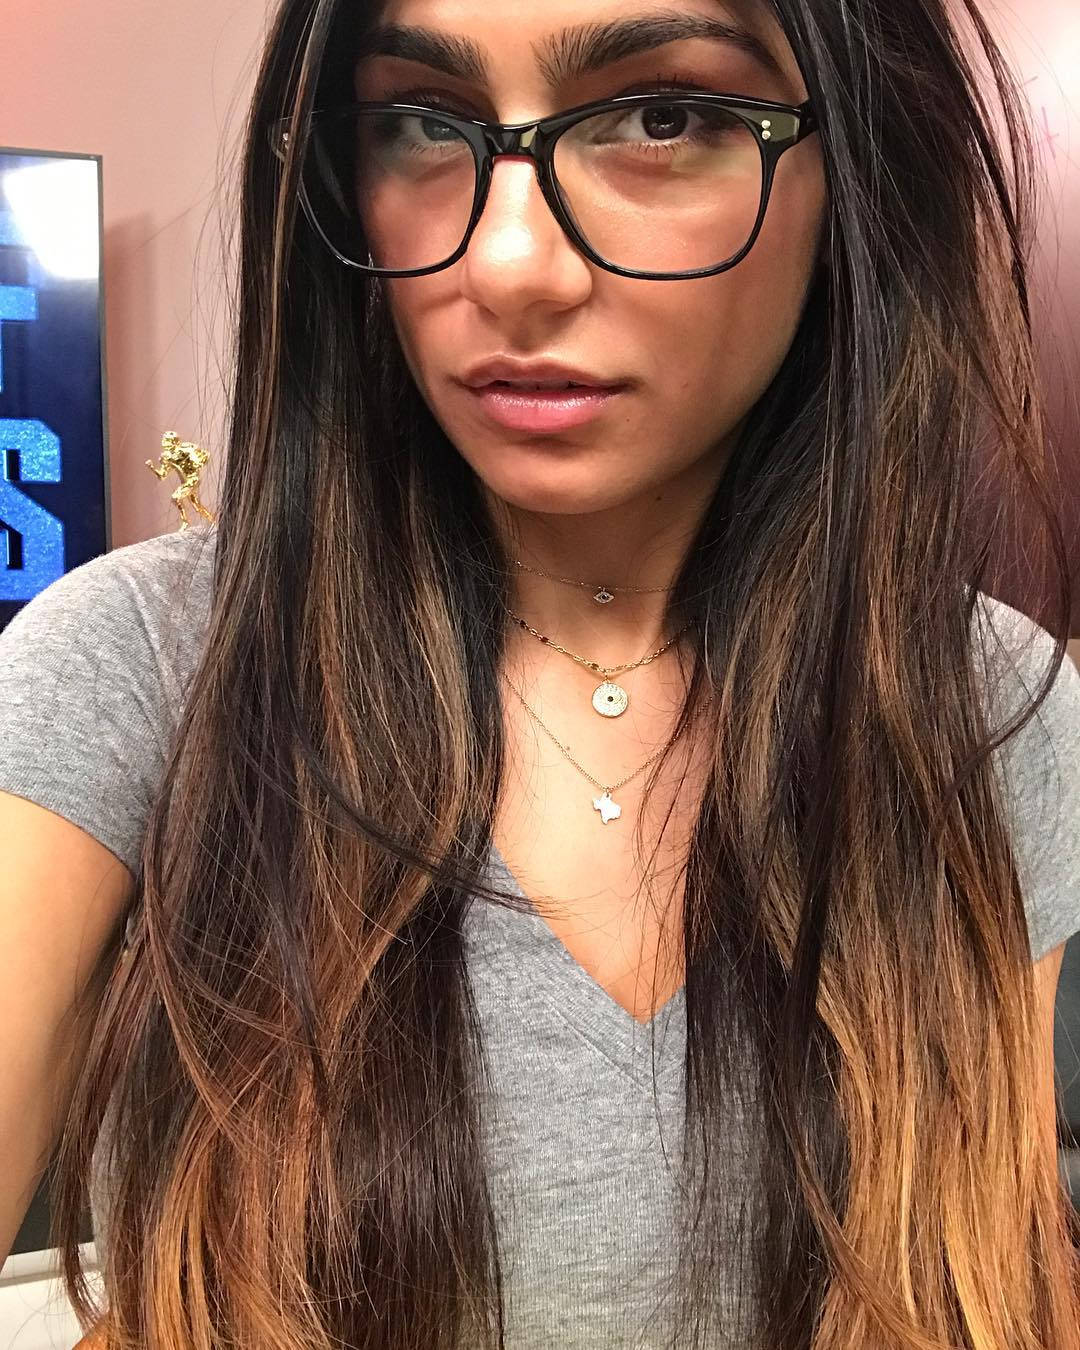 Mia Khalifa Glowing In Reflection: Eyeglass Selfie Wallpaper